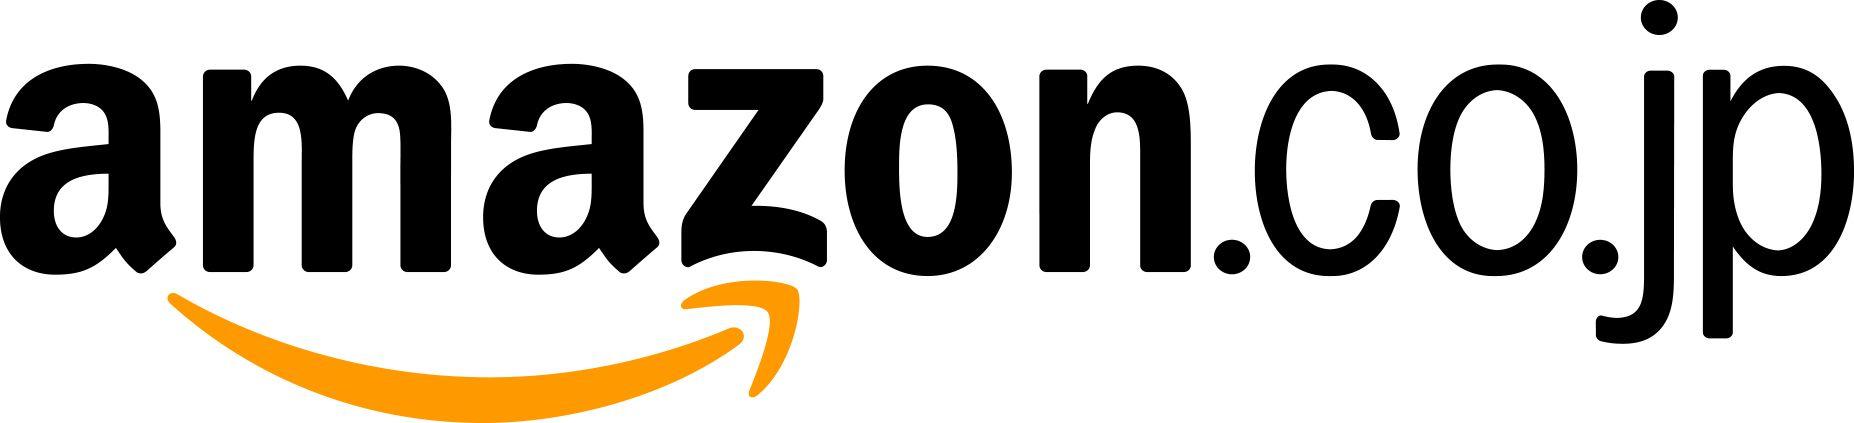 Amazon Company Logo - Images